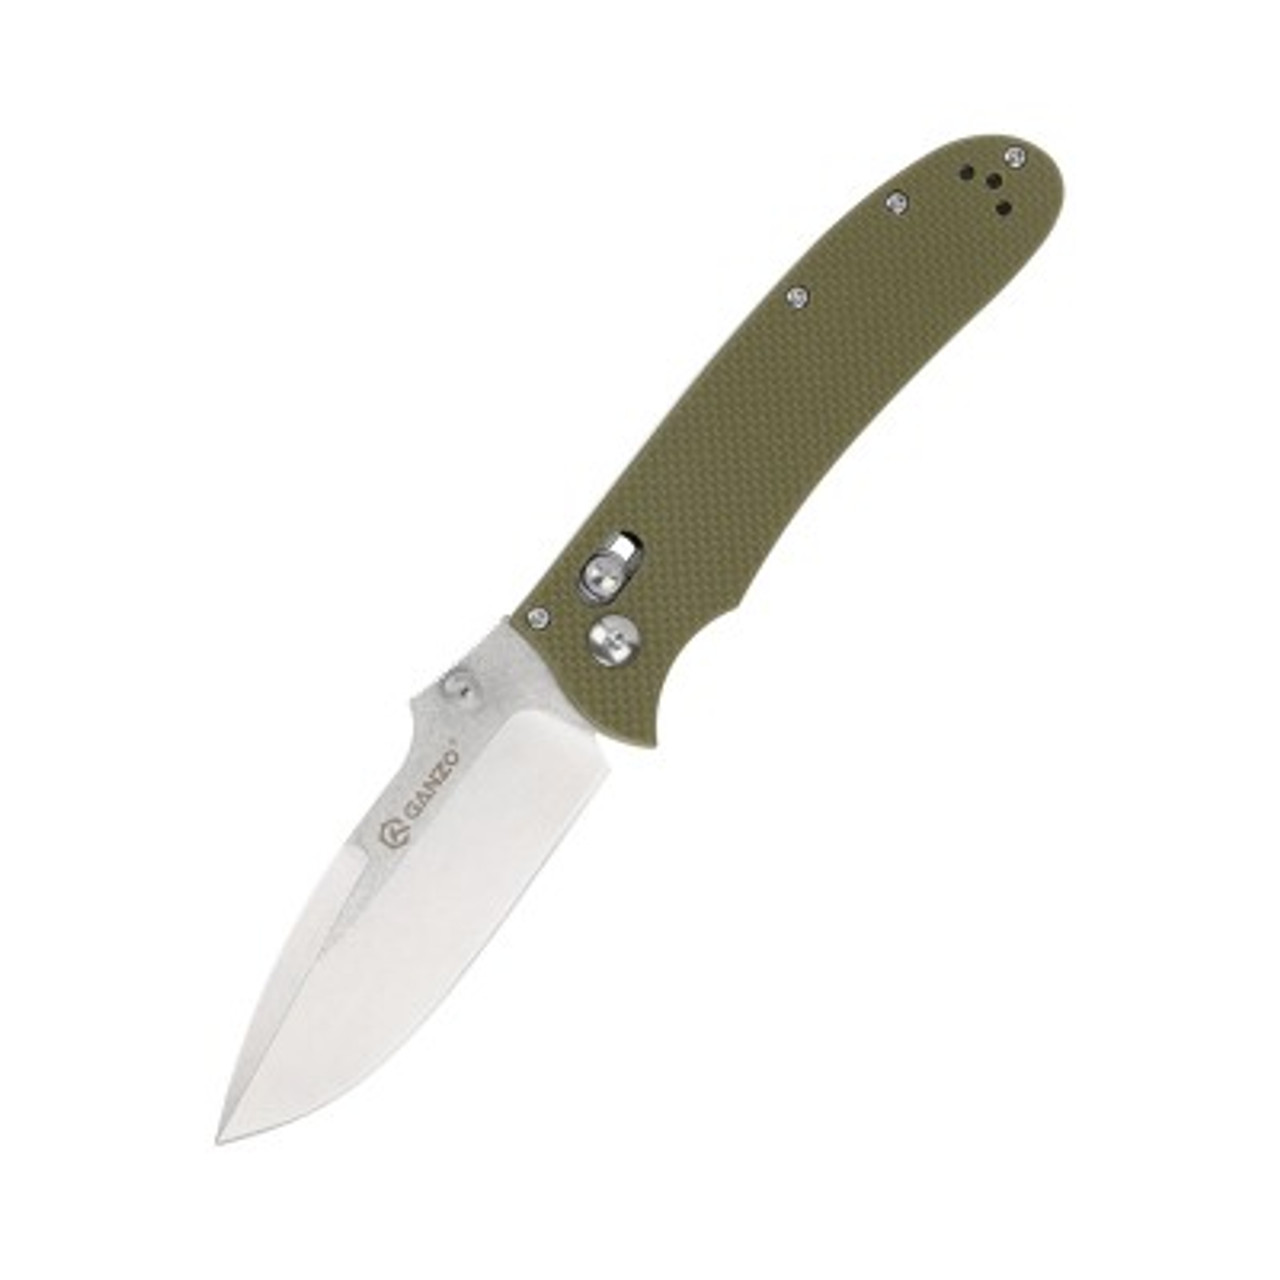 Ganzo Folding Knife Green G10 Handle D2 Drop Point Plain Edge G704-GR